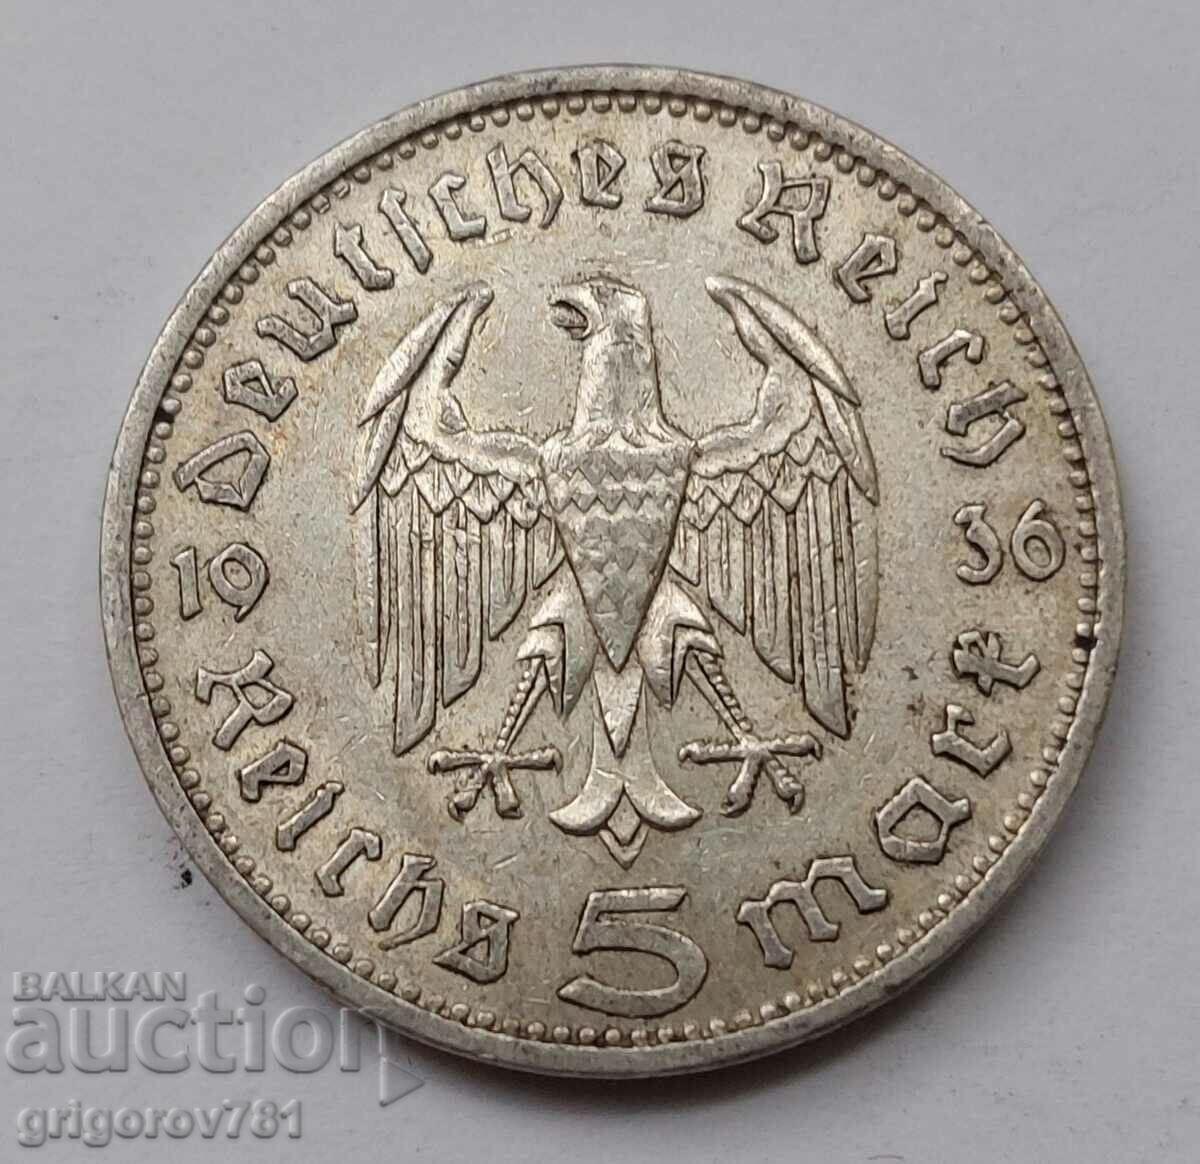 5 Mark Silver Γερμανία 1936 A III Reich Silver Coin #37